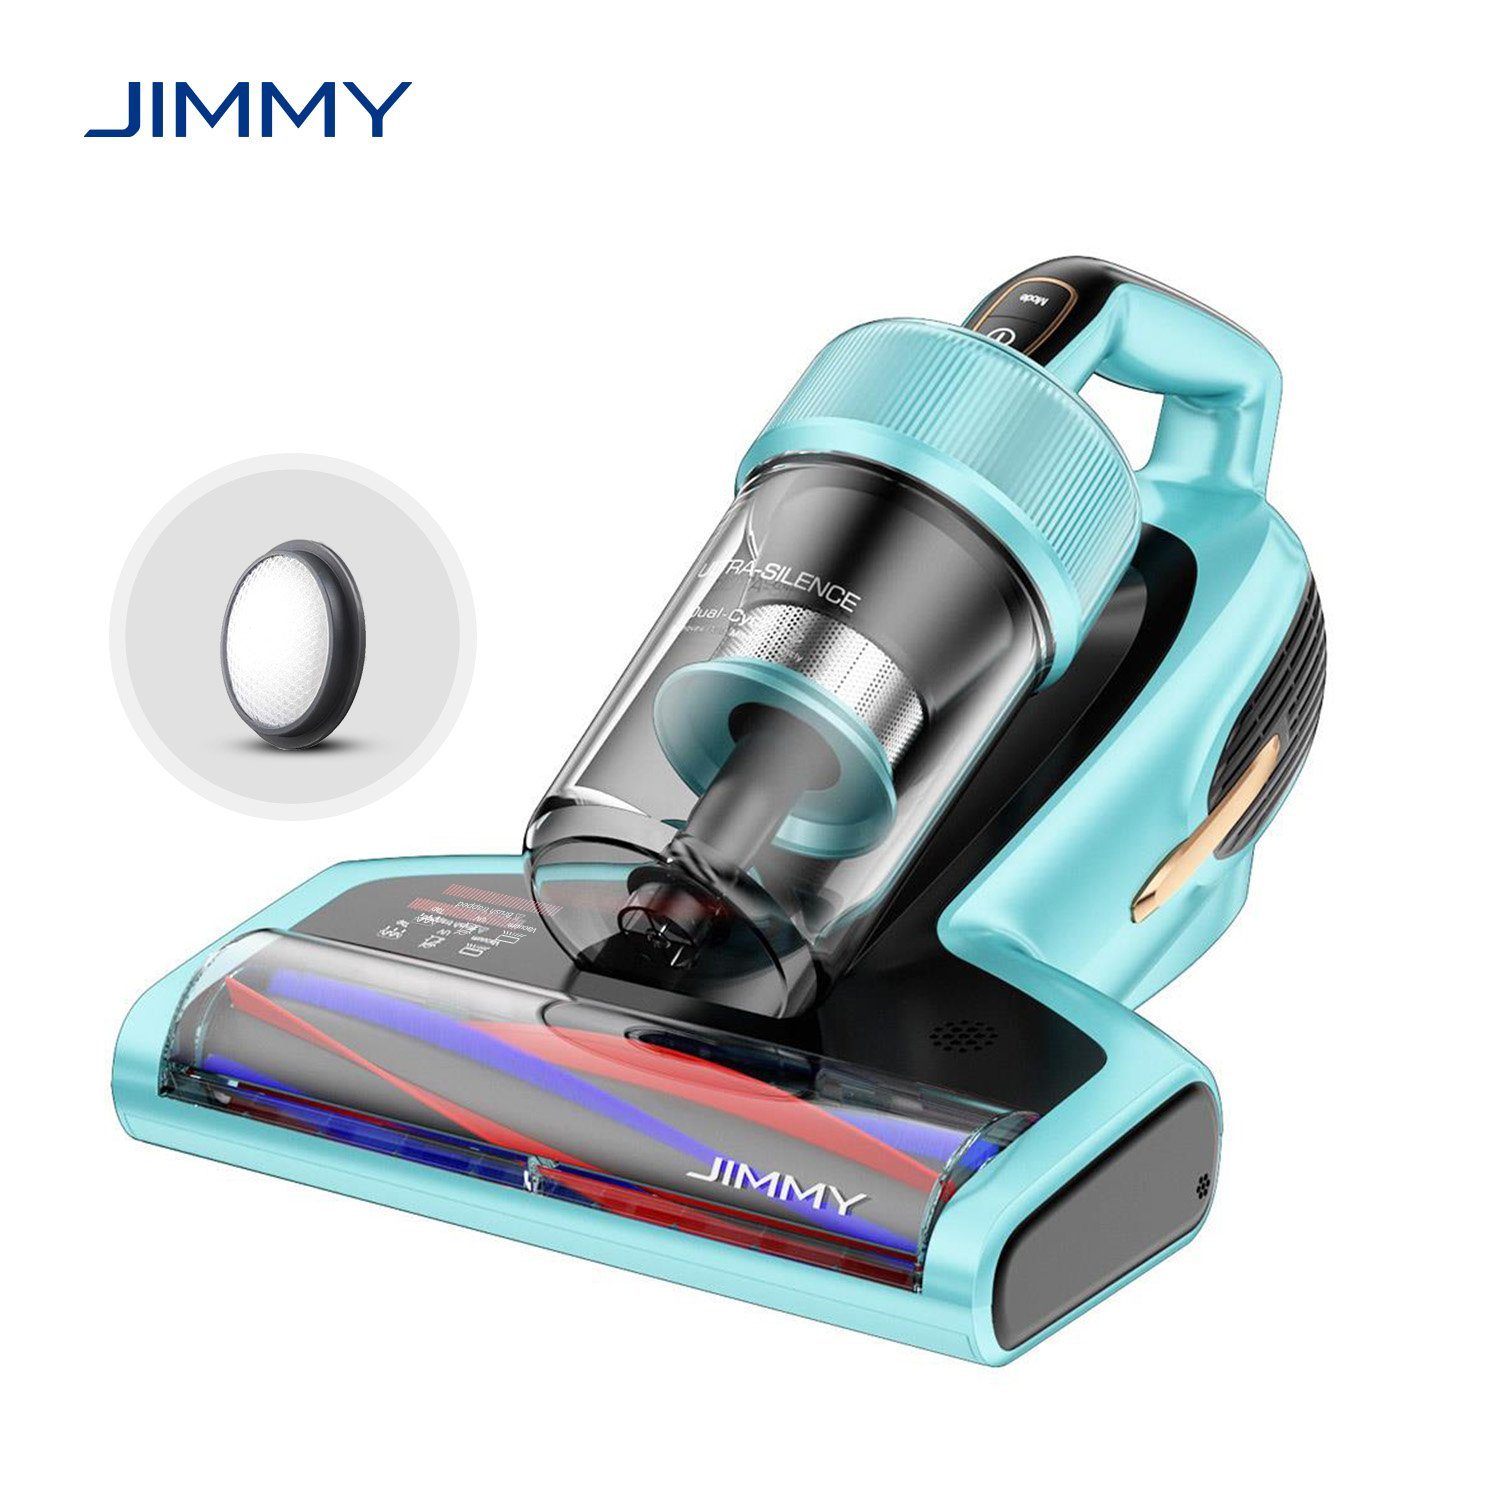 Jimmy Pro W, Milbenstaubsauger Blau Licht, mit Matratzenreinigungsgerät Handstaubsauger, Ultraschallfunktion Beutel, Hausstaubmilbensensor, BX7 UV-C 700,00